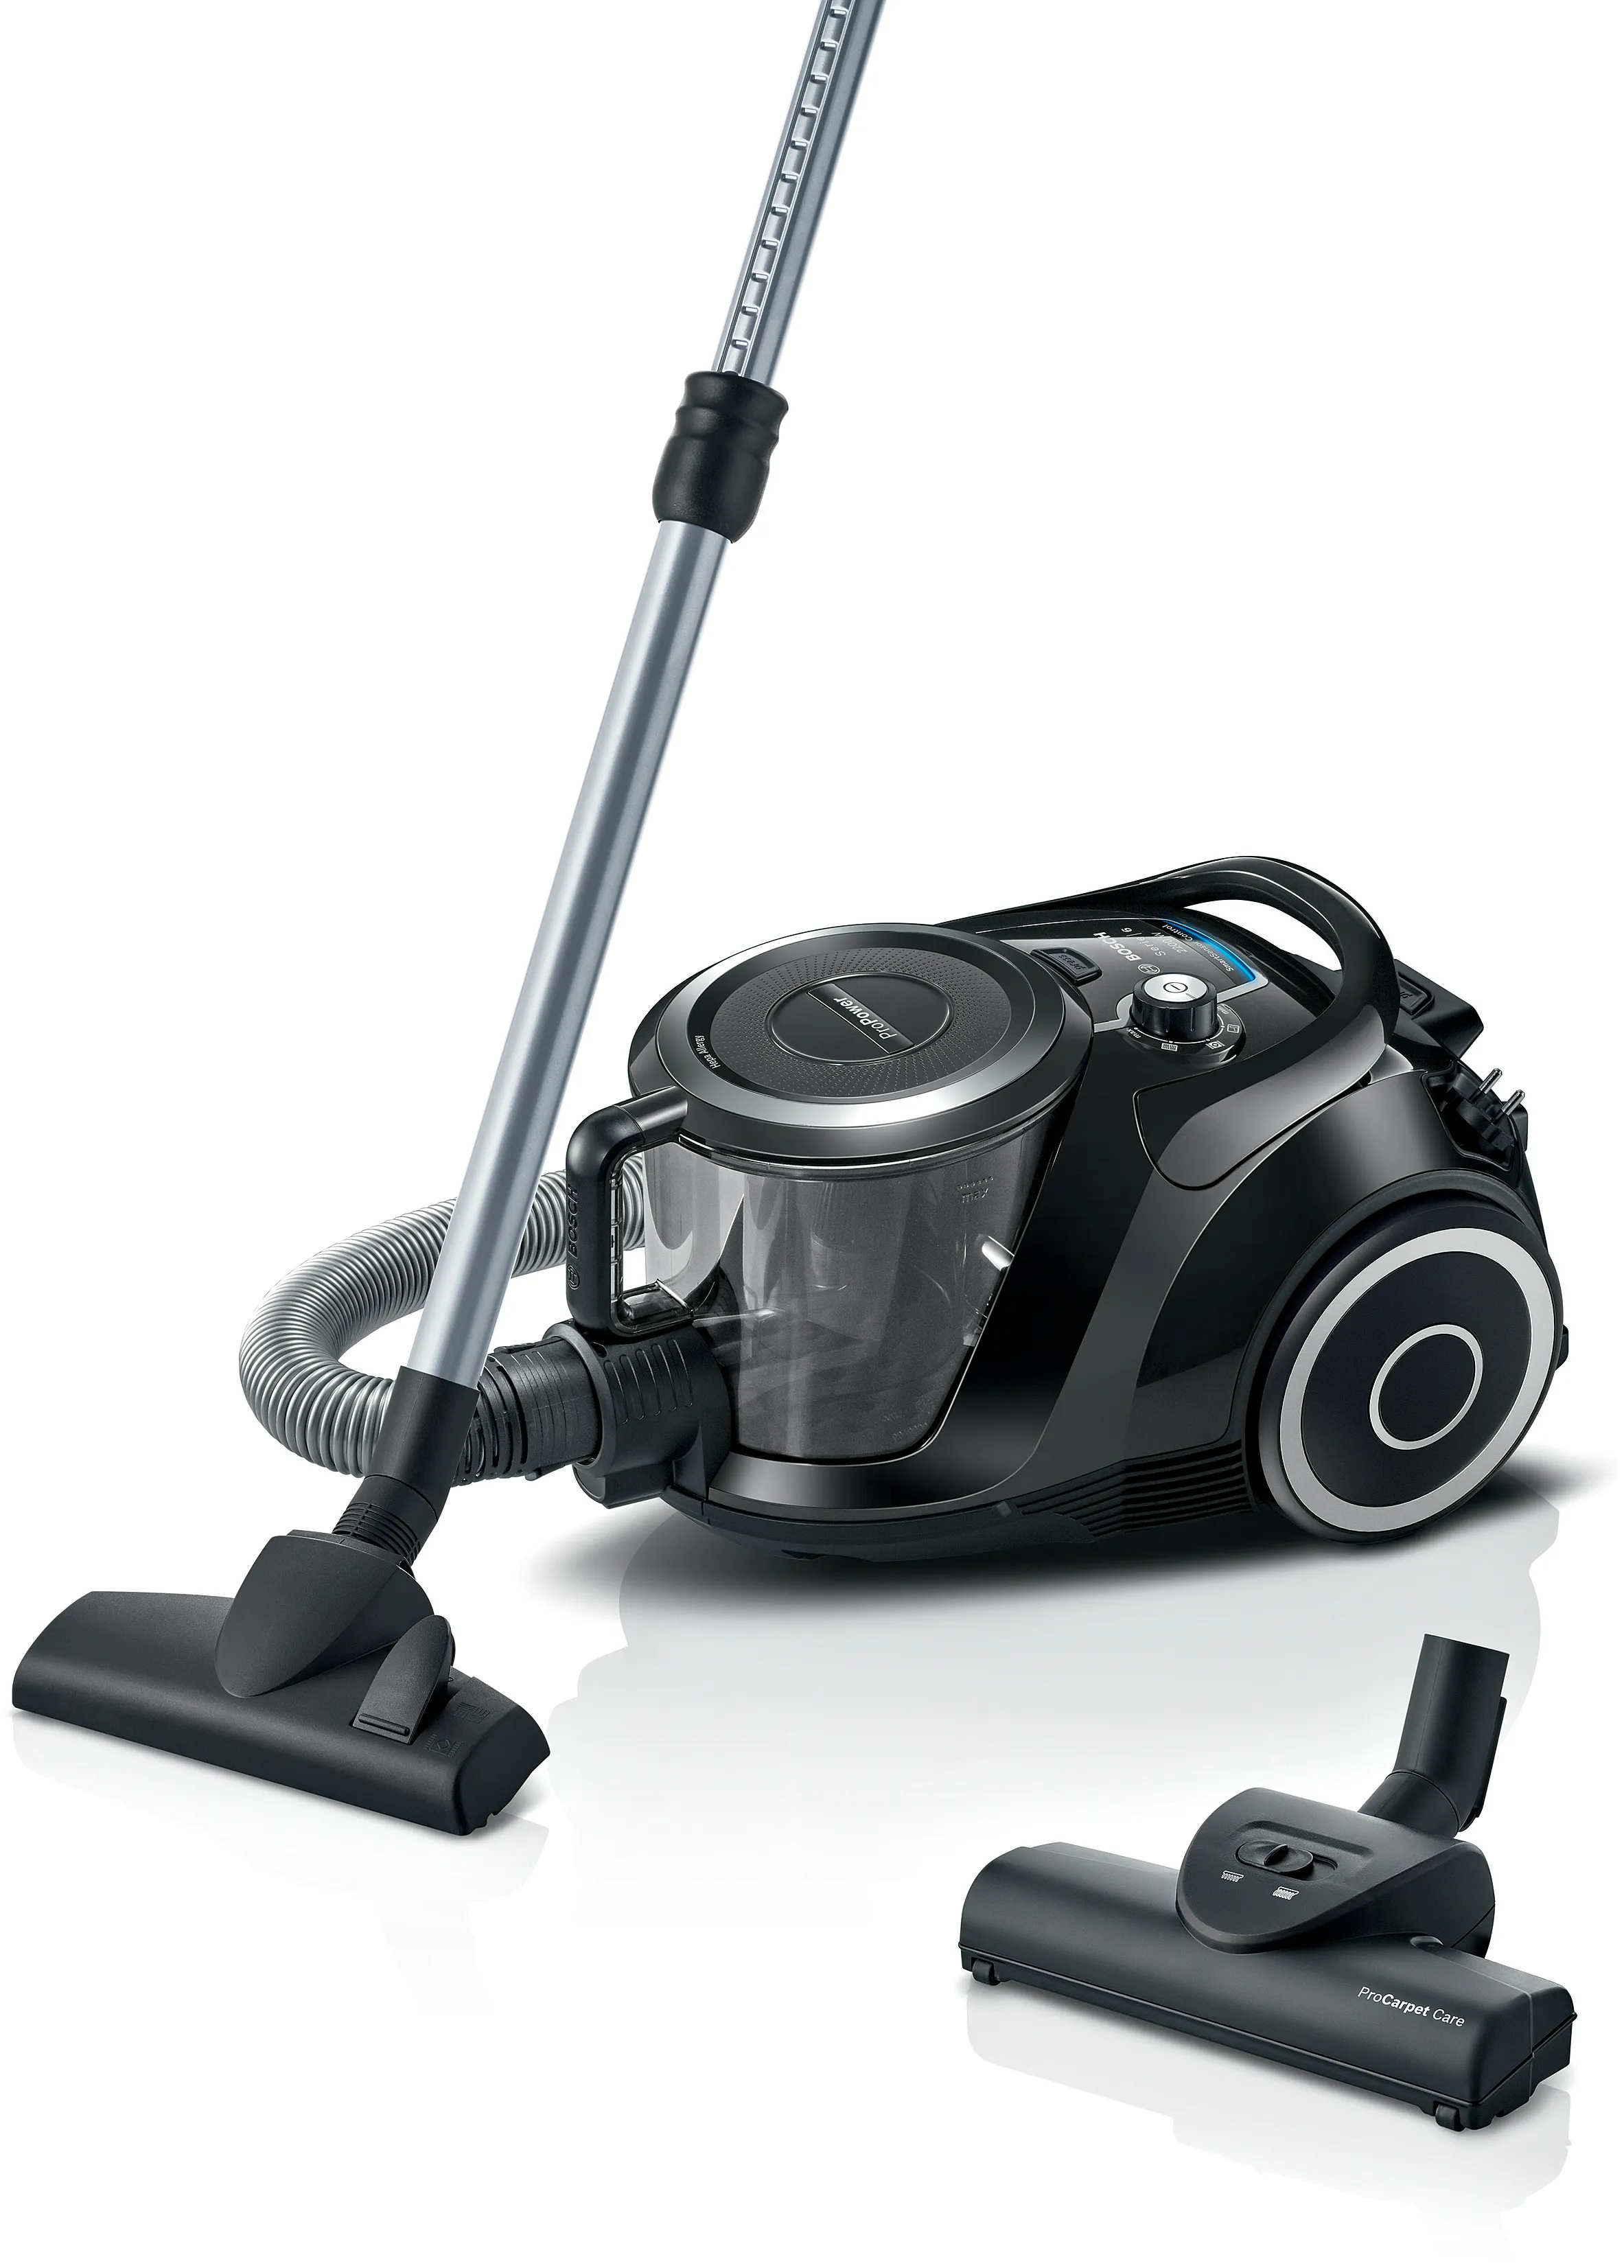 ซีรี่ 6 Bagless vacuum cleaner สีดำ 